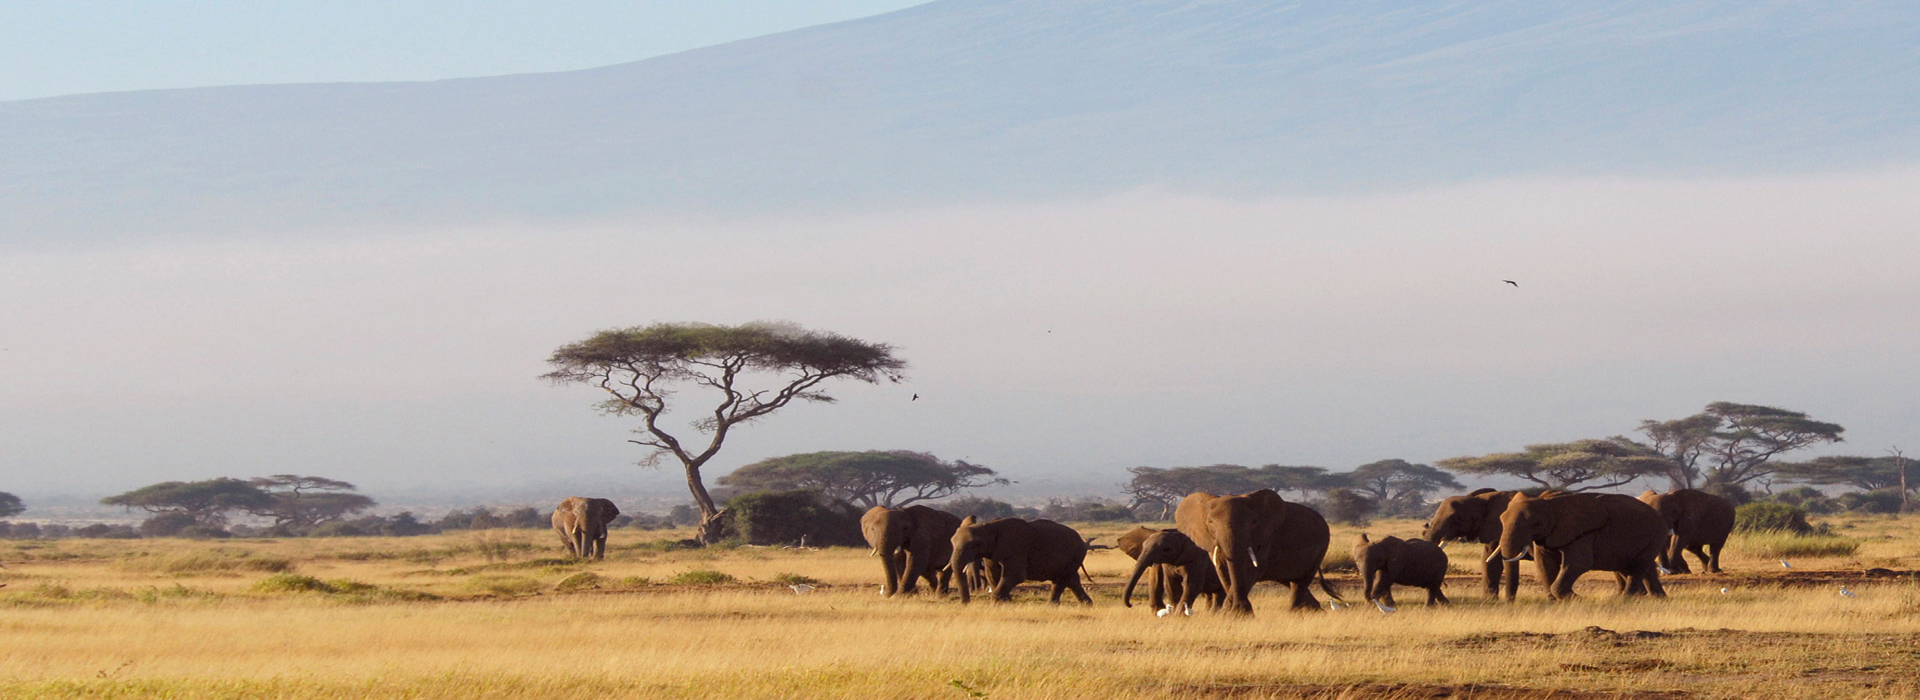 Background Image for Amboseli National Park